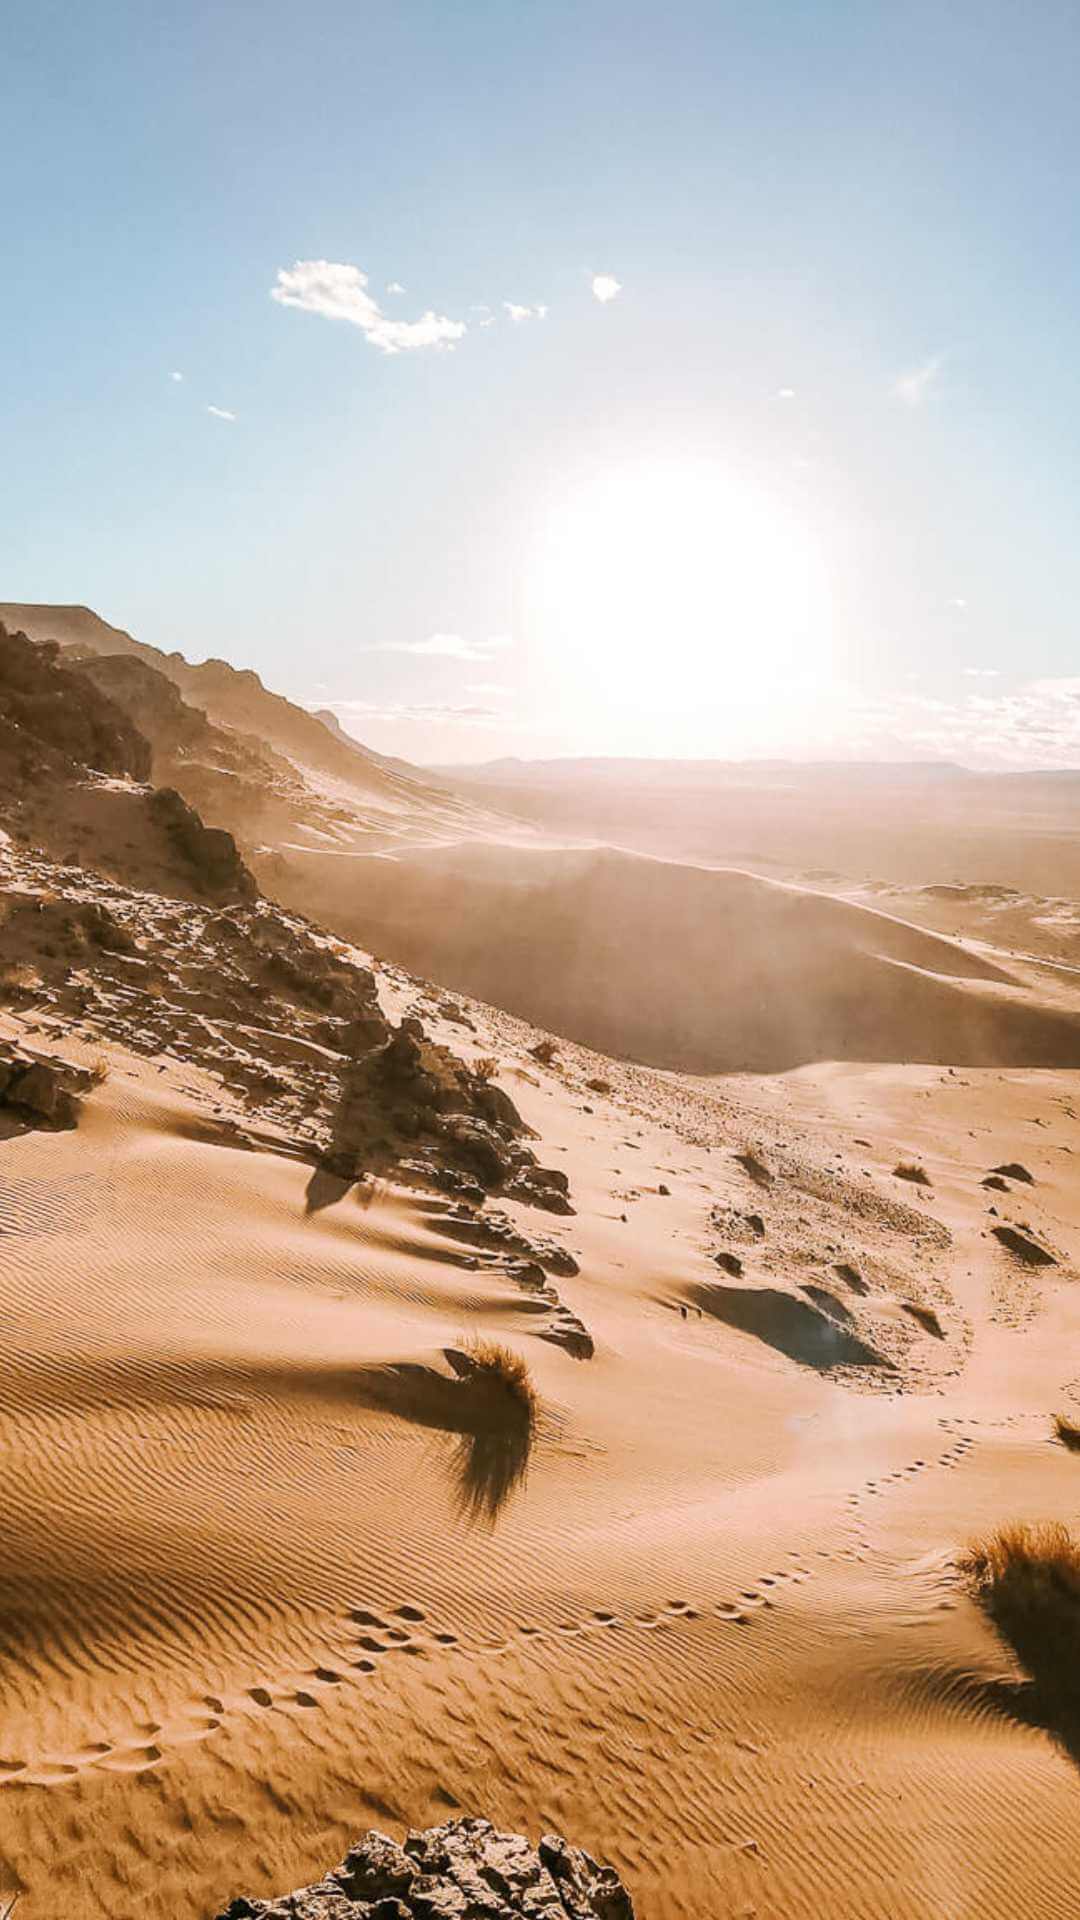 Featured image for “Sunrise over Zagora Desert”